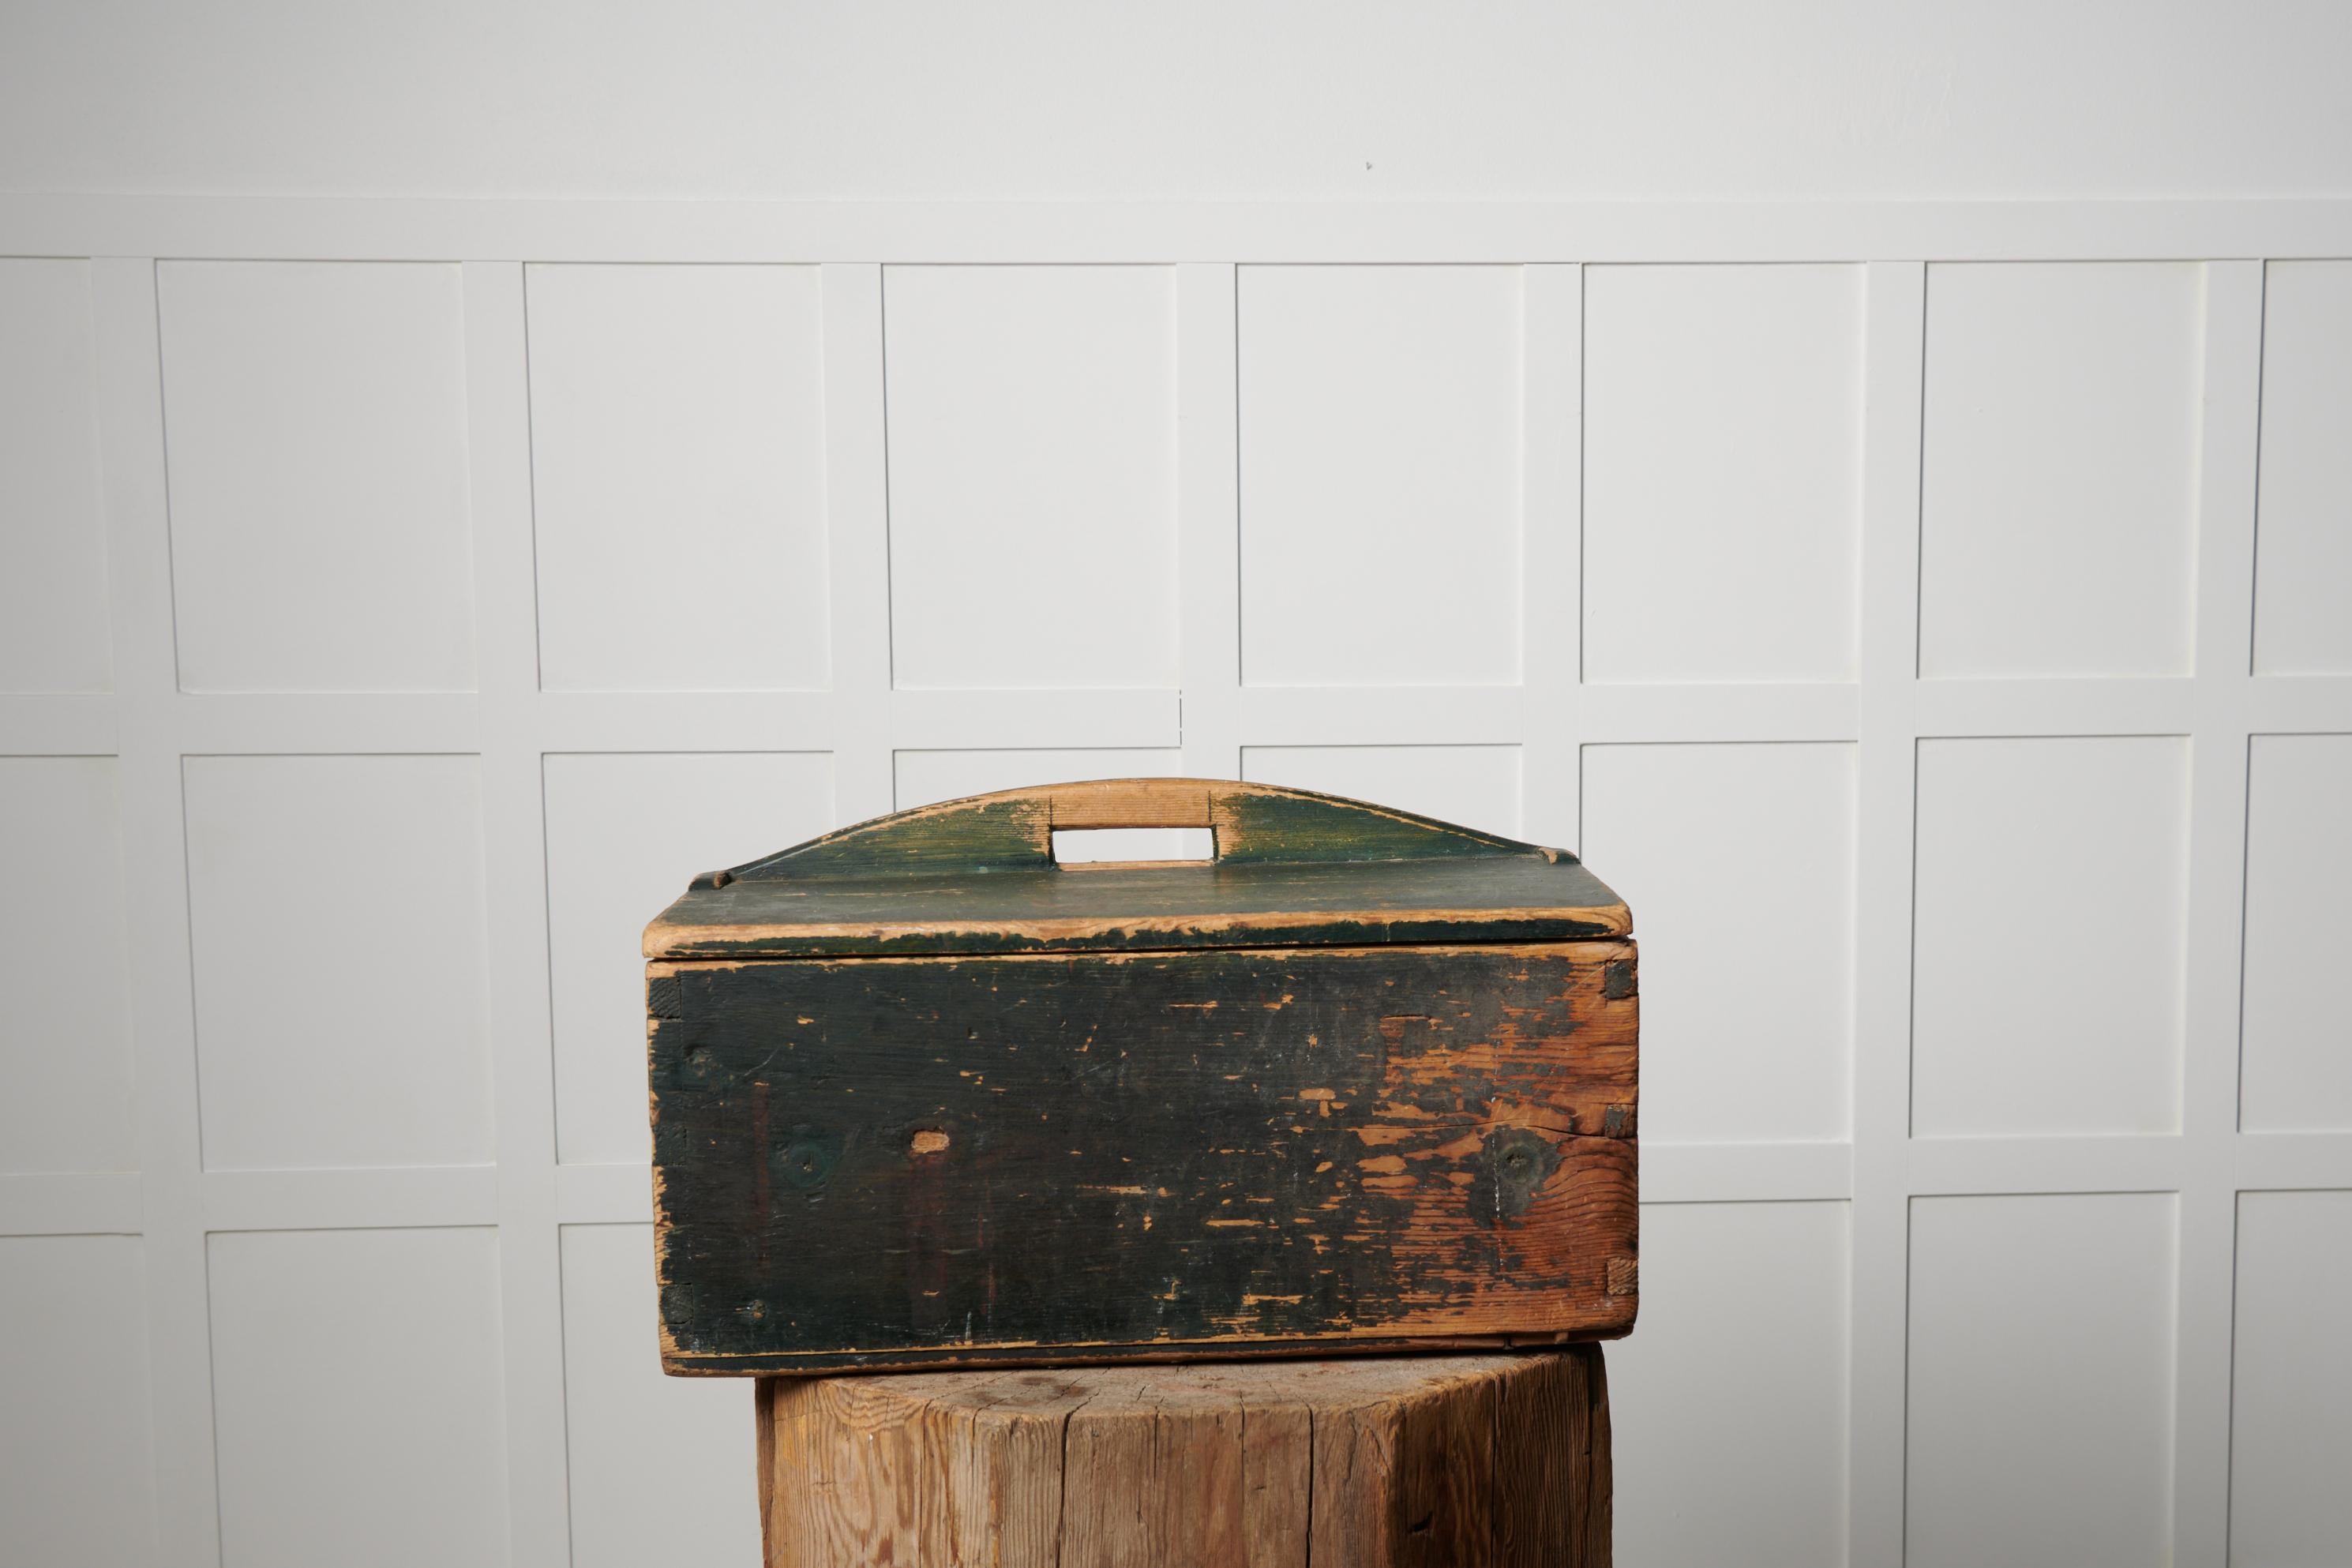 Antiker schwedischer Mehlkasten, handgefertigt aus massivem Kiefernholz. Die Schachtel stammt aus Nordschweden und wurde um die Mitte des 19. Jahrhunderts, 1840 bis 1850, hergestellt. Die Schachtel ist in unversehrtem Originalzustand mit einigen